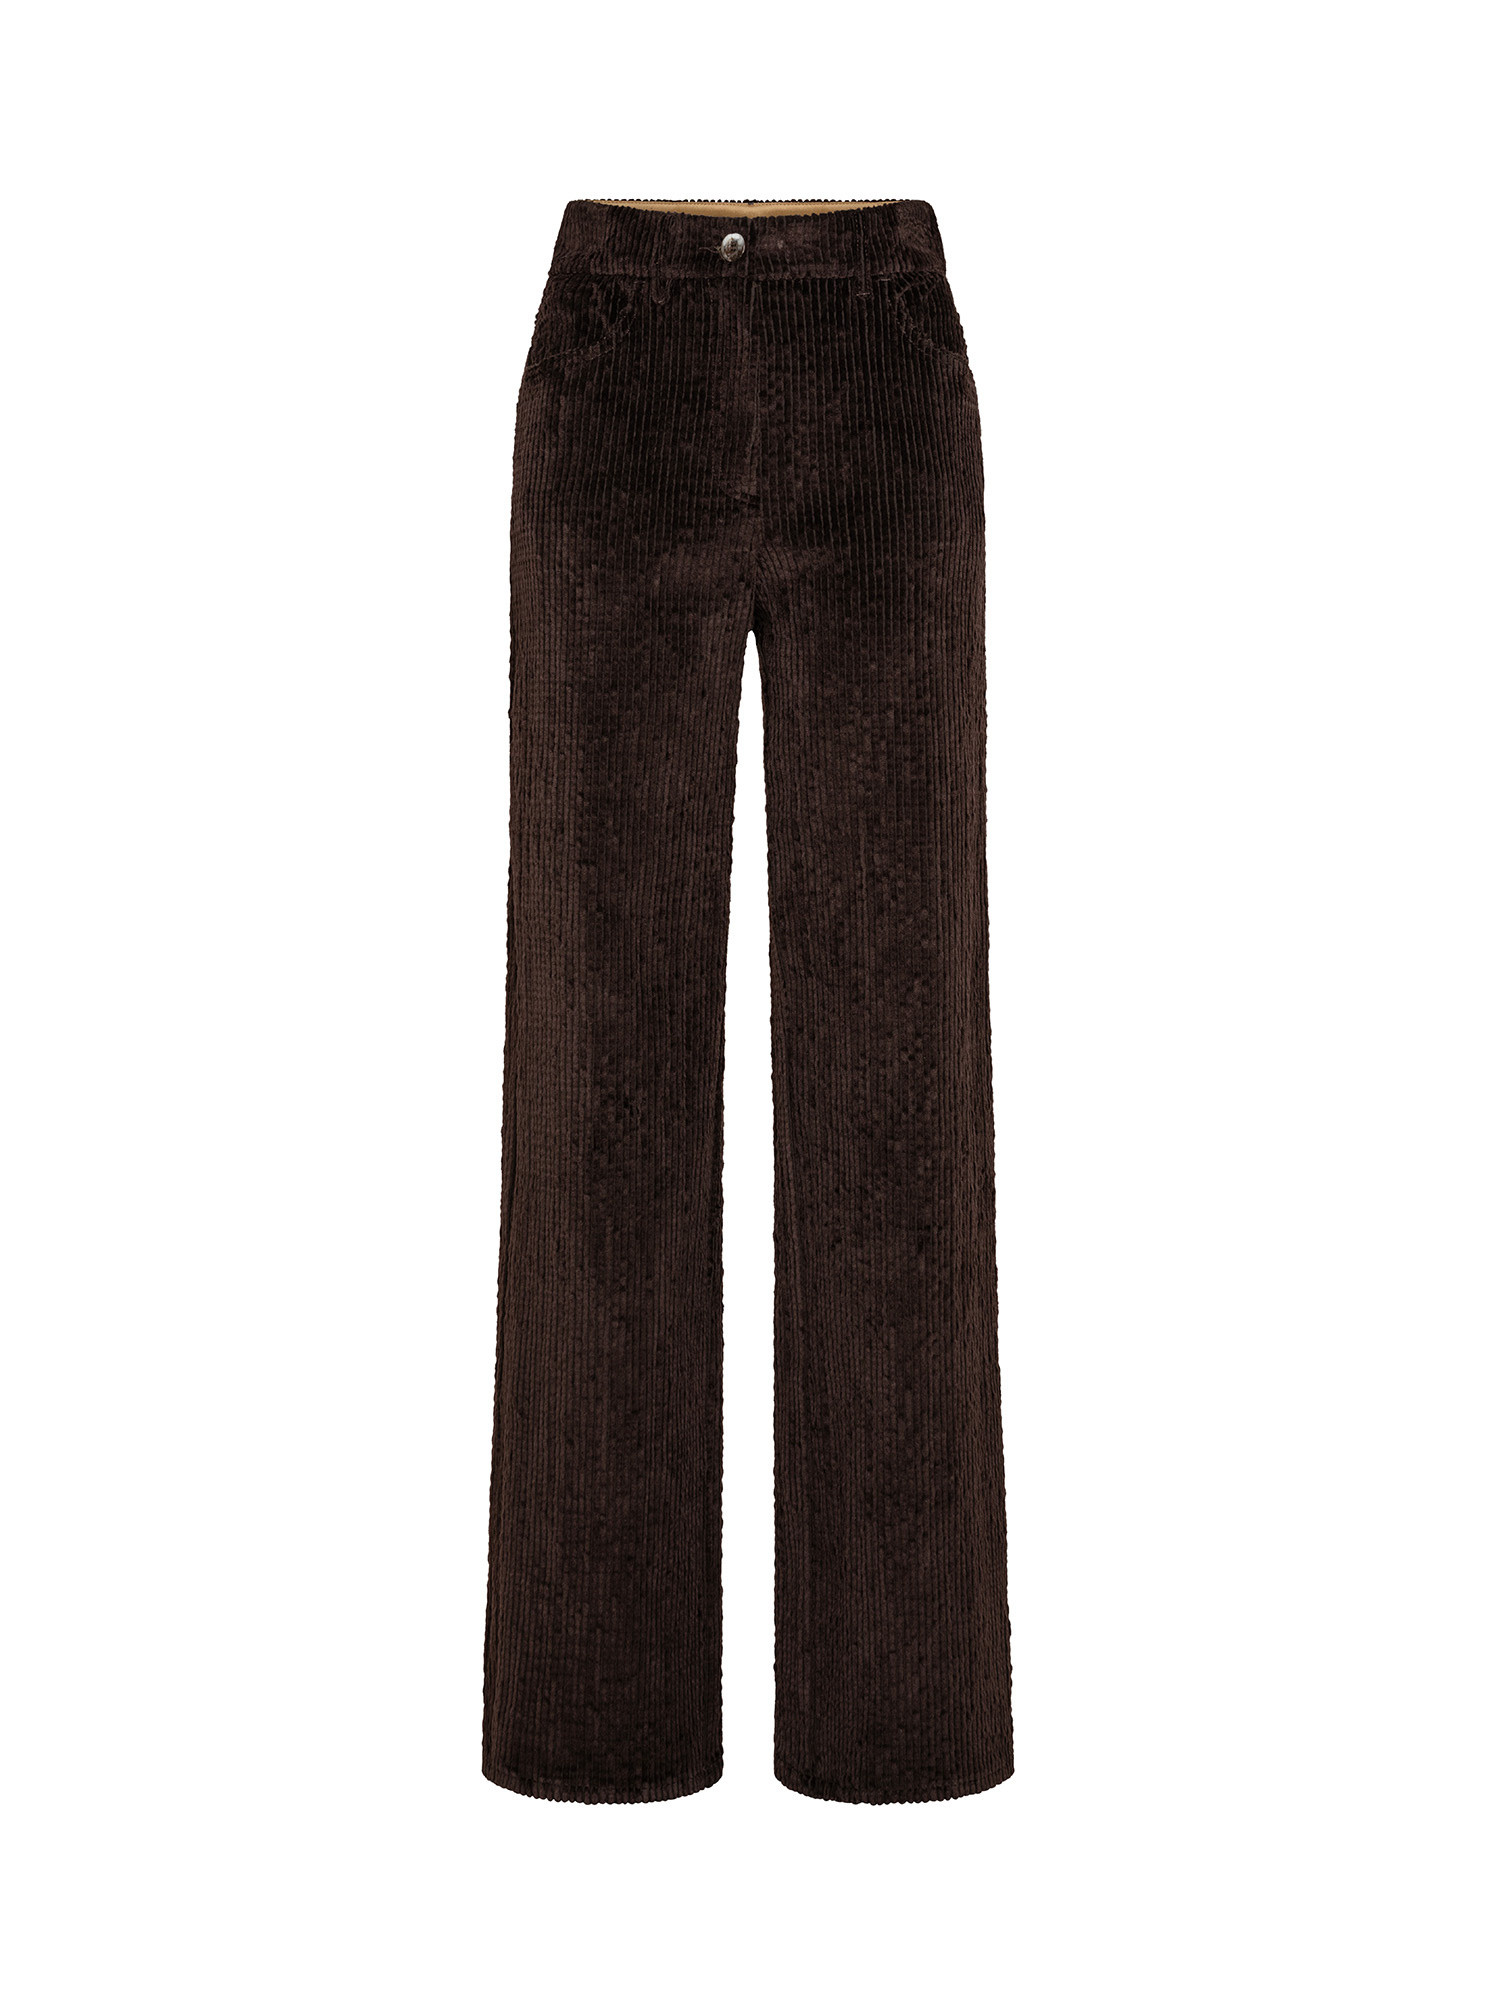 Pantalone a gamba svasata in velluto, Brown, large image number 0